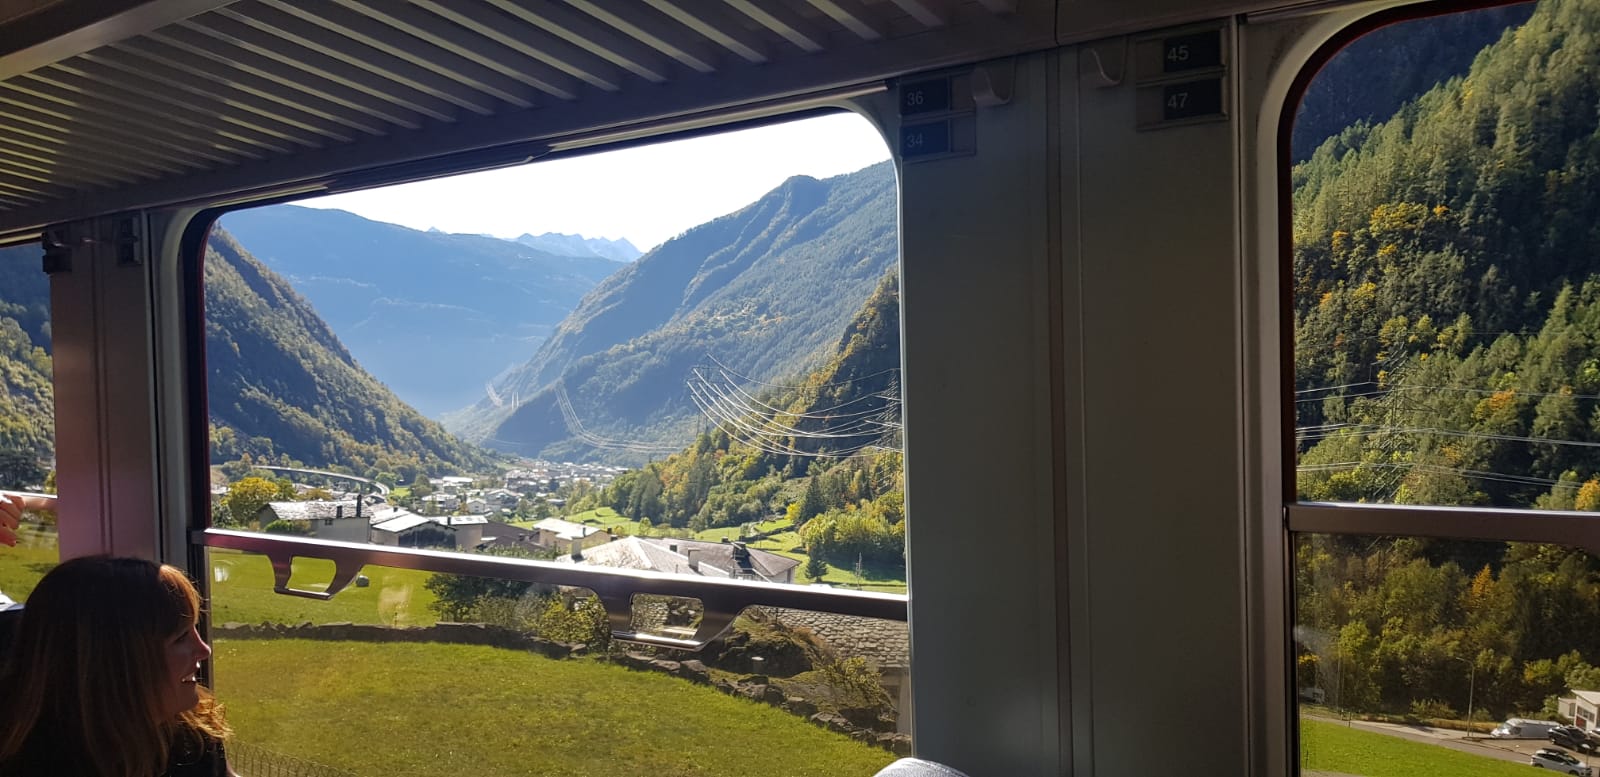 Paisajes desde el tren Bernina Express